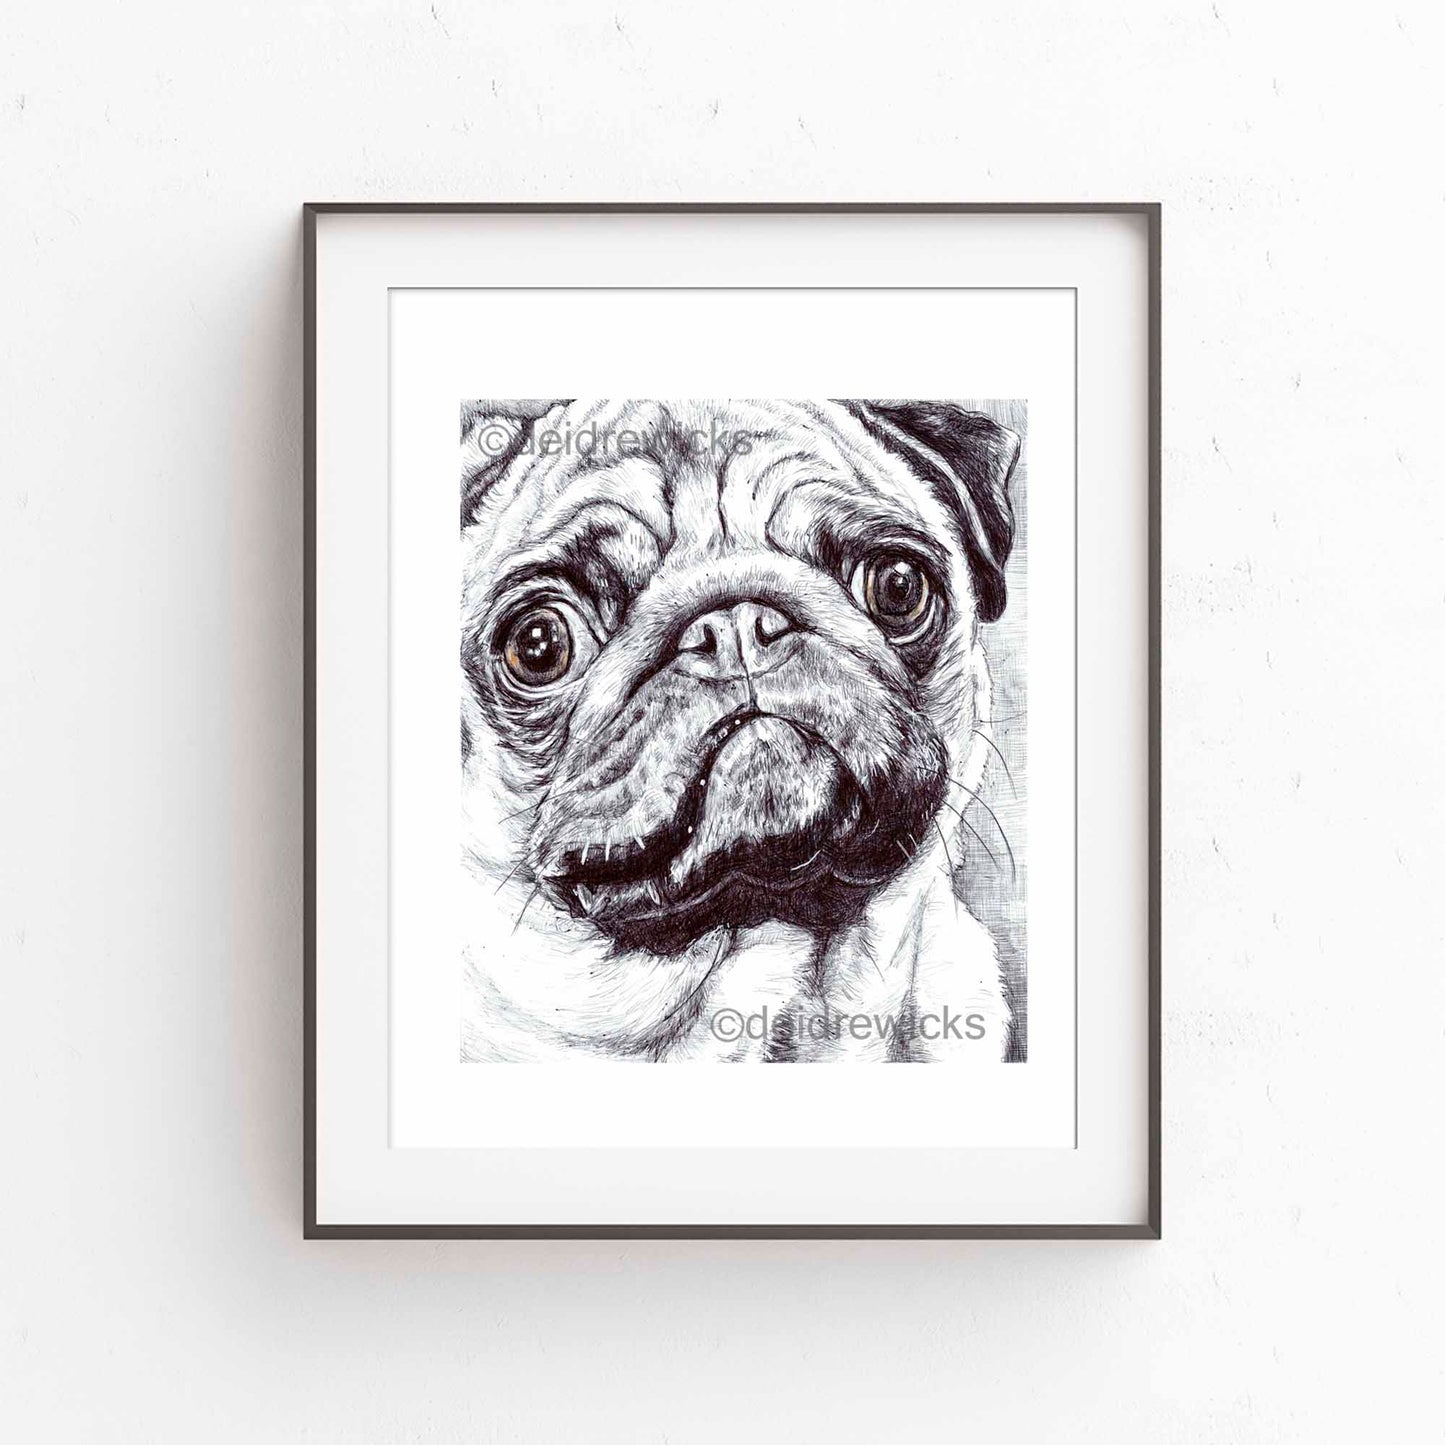 Framed example of a pug. Ballpoint pen dog art by Deidre Wicks